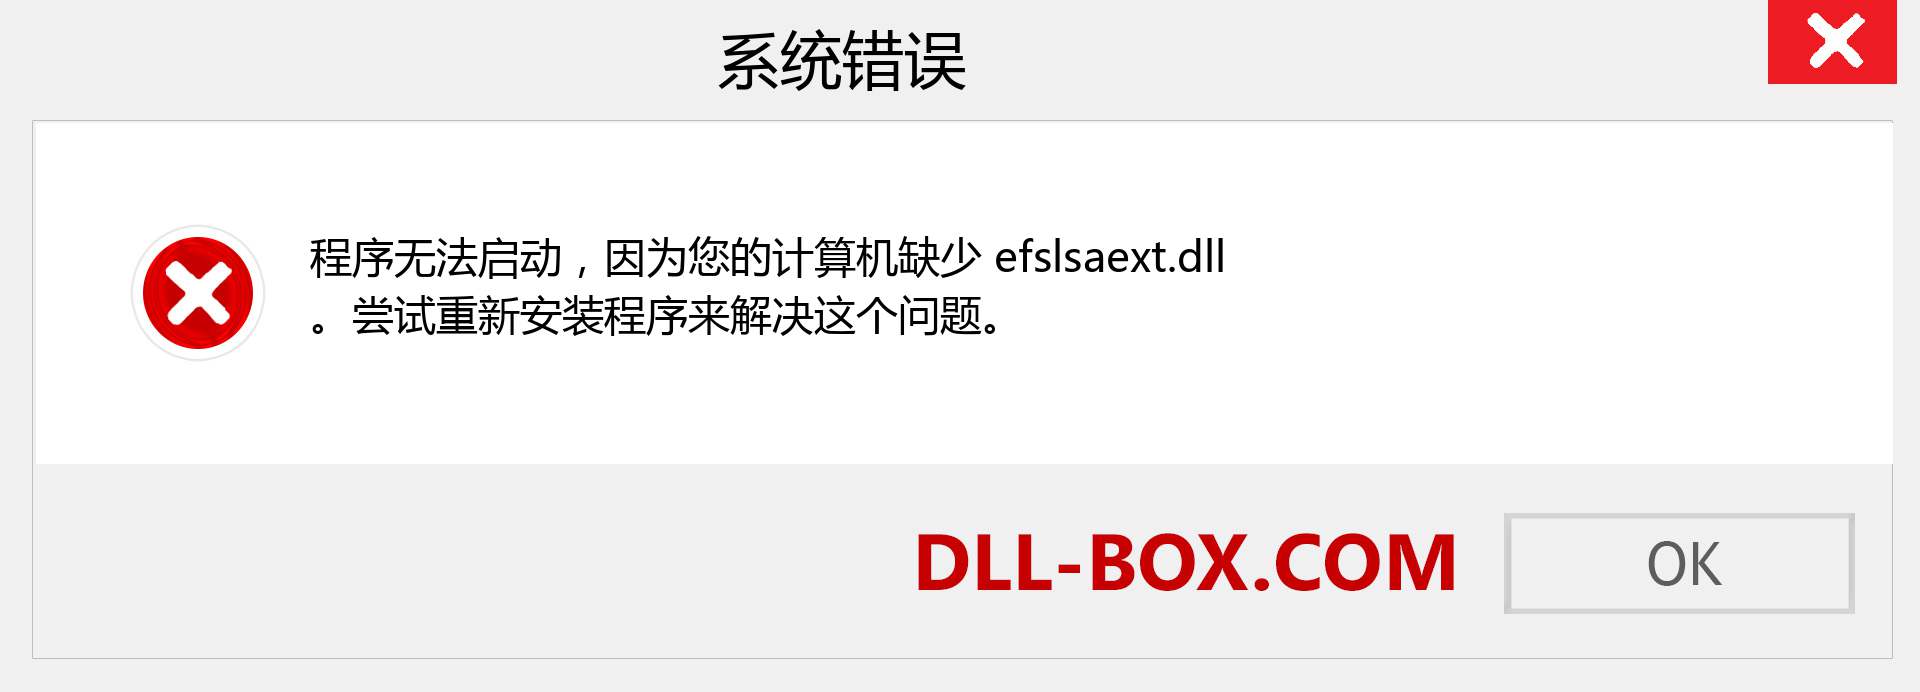 efslsaext.dll 文件丢失？。 适用于 Windows 7、8、10 的下载 - 修复 Windows、照片、图像上的 efslsaext dll 丢失错误